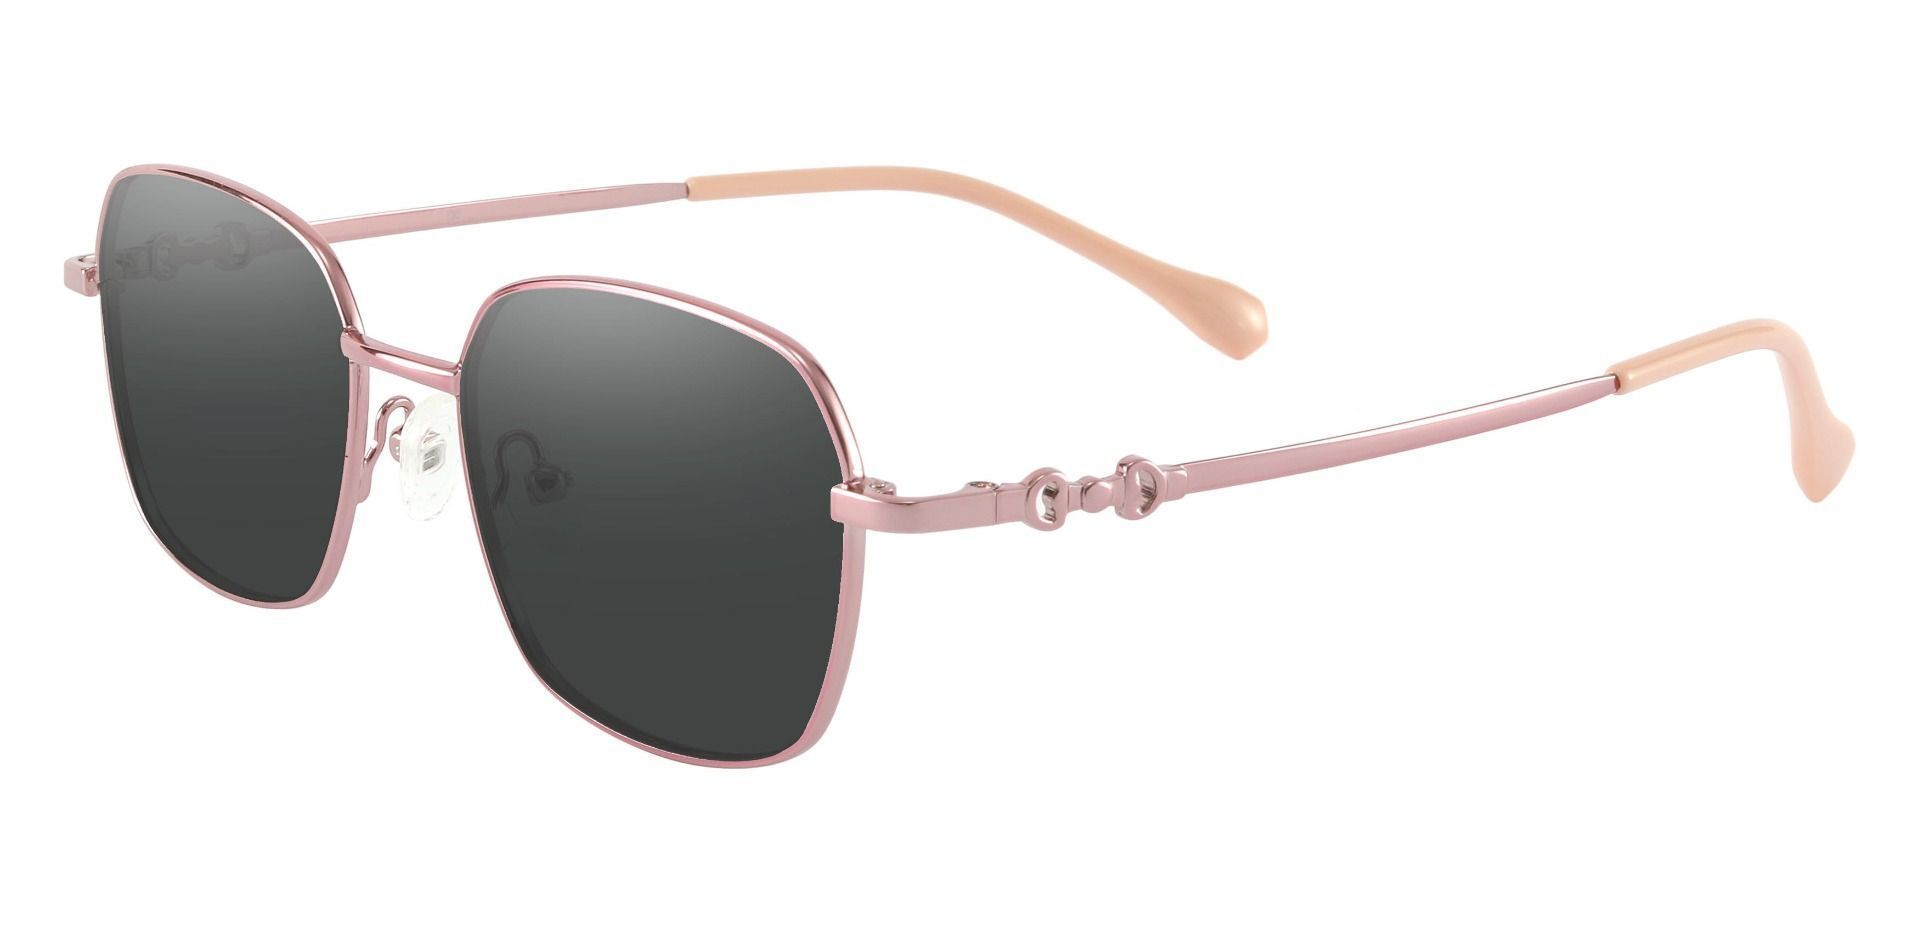 Averill Geometric Prescription Sunglasses - Rose Gold Frame With Gray Lenses